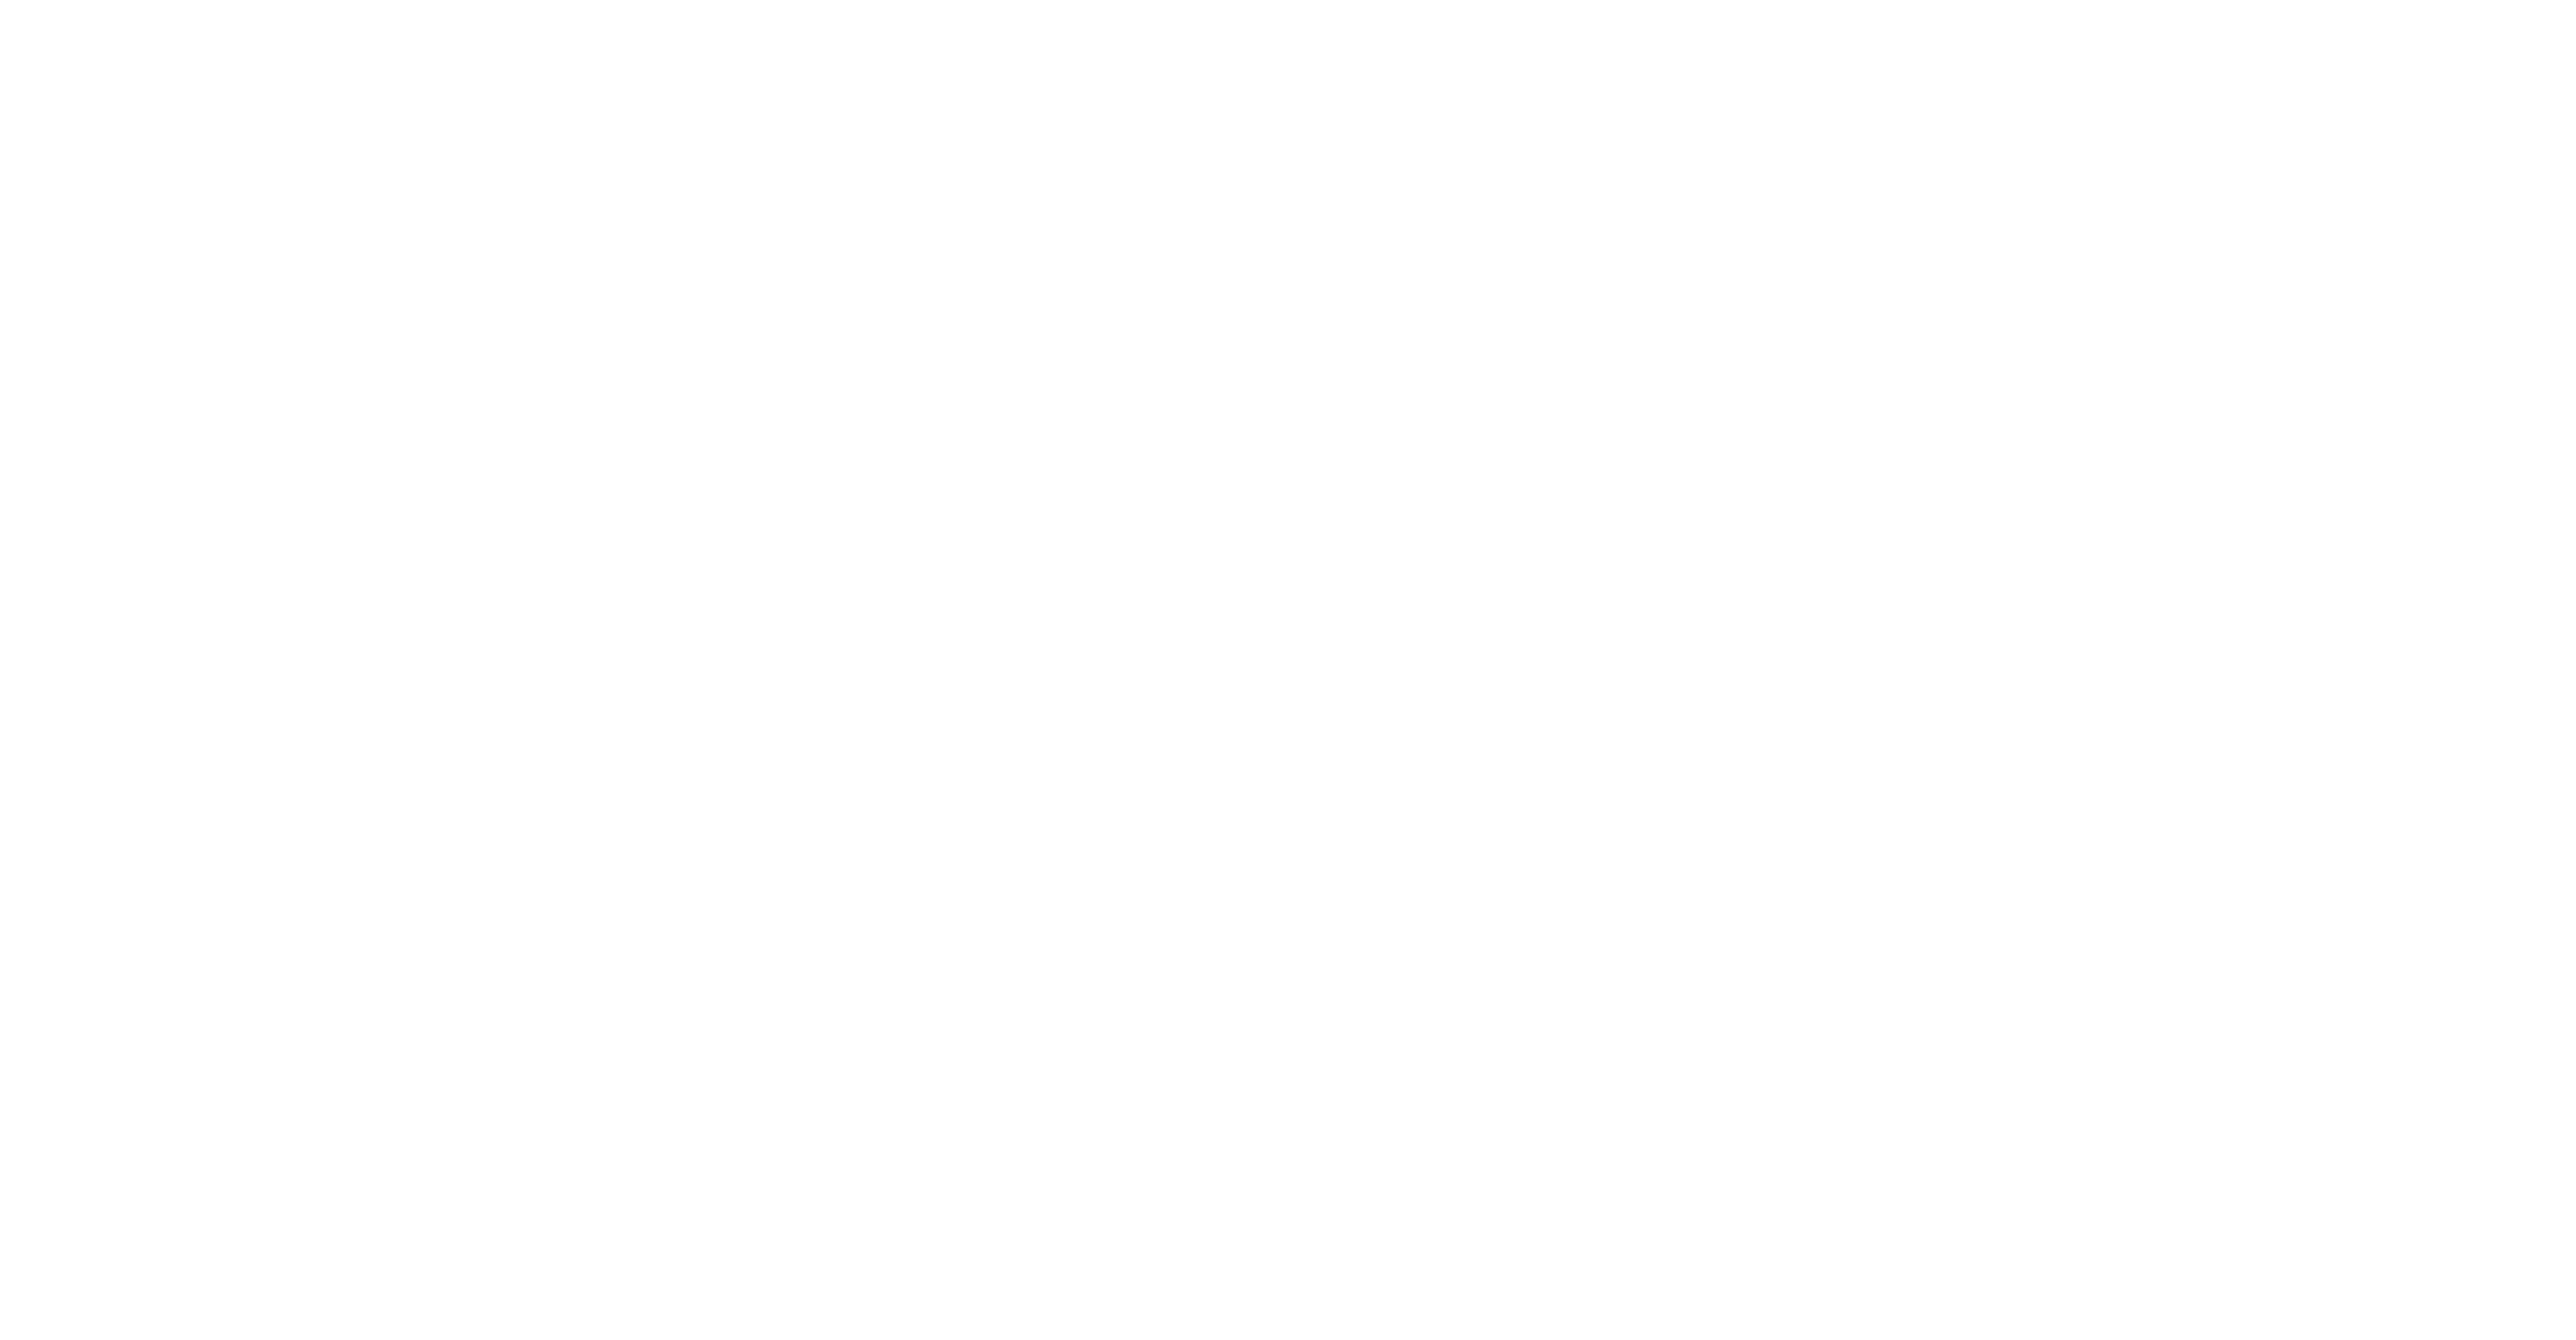 ksod logo